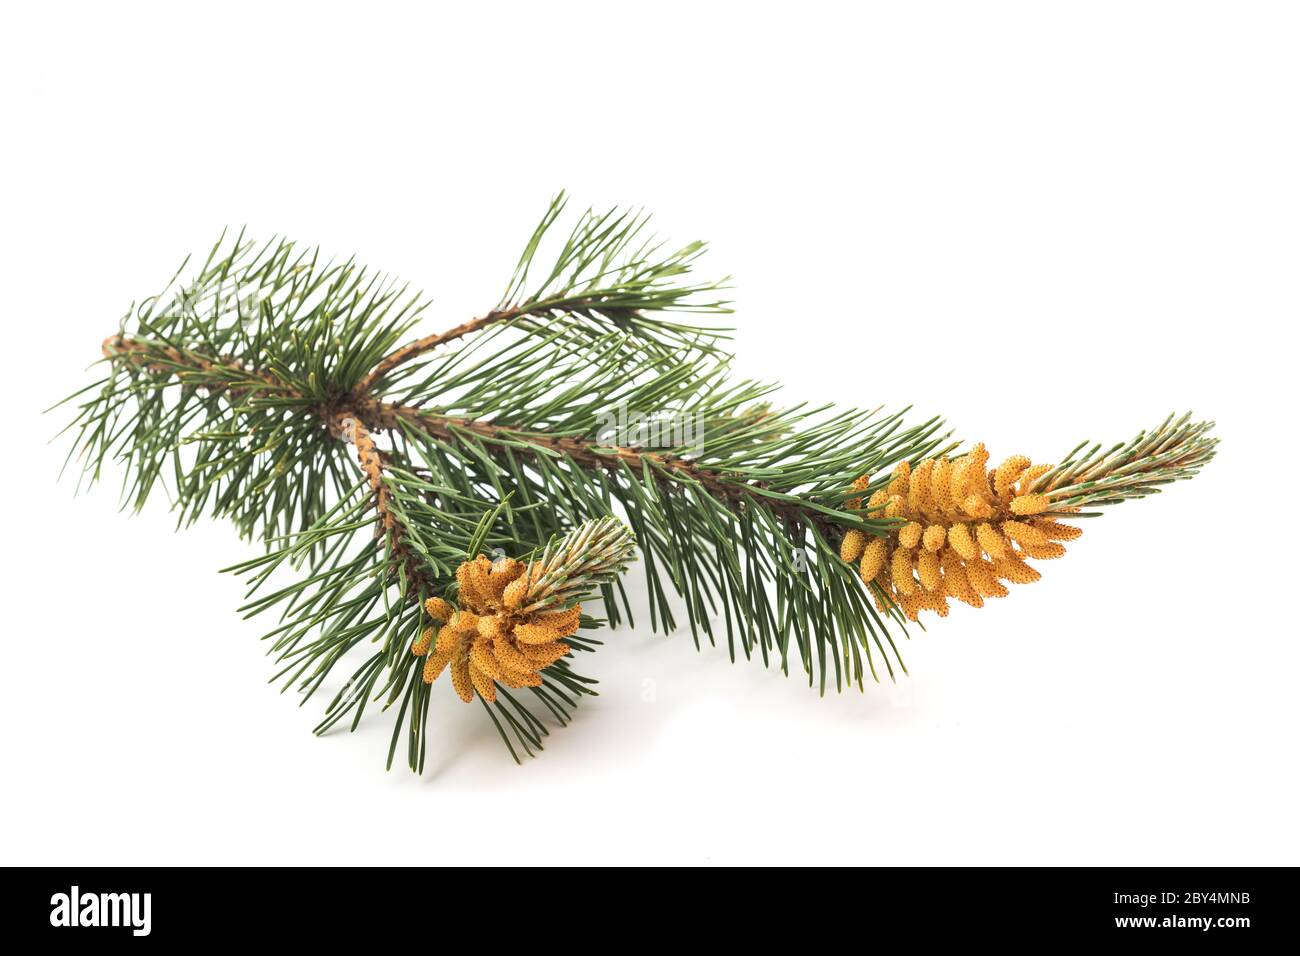 mugo pine branch isolated on white background Stock Photo